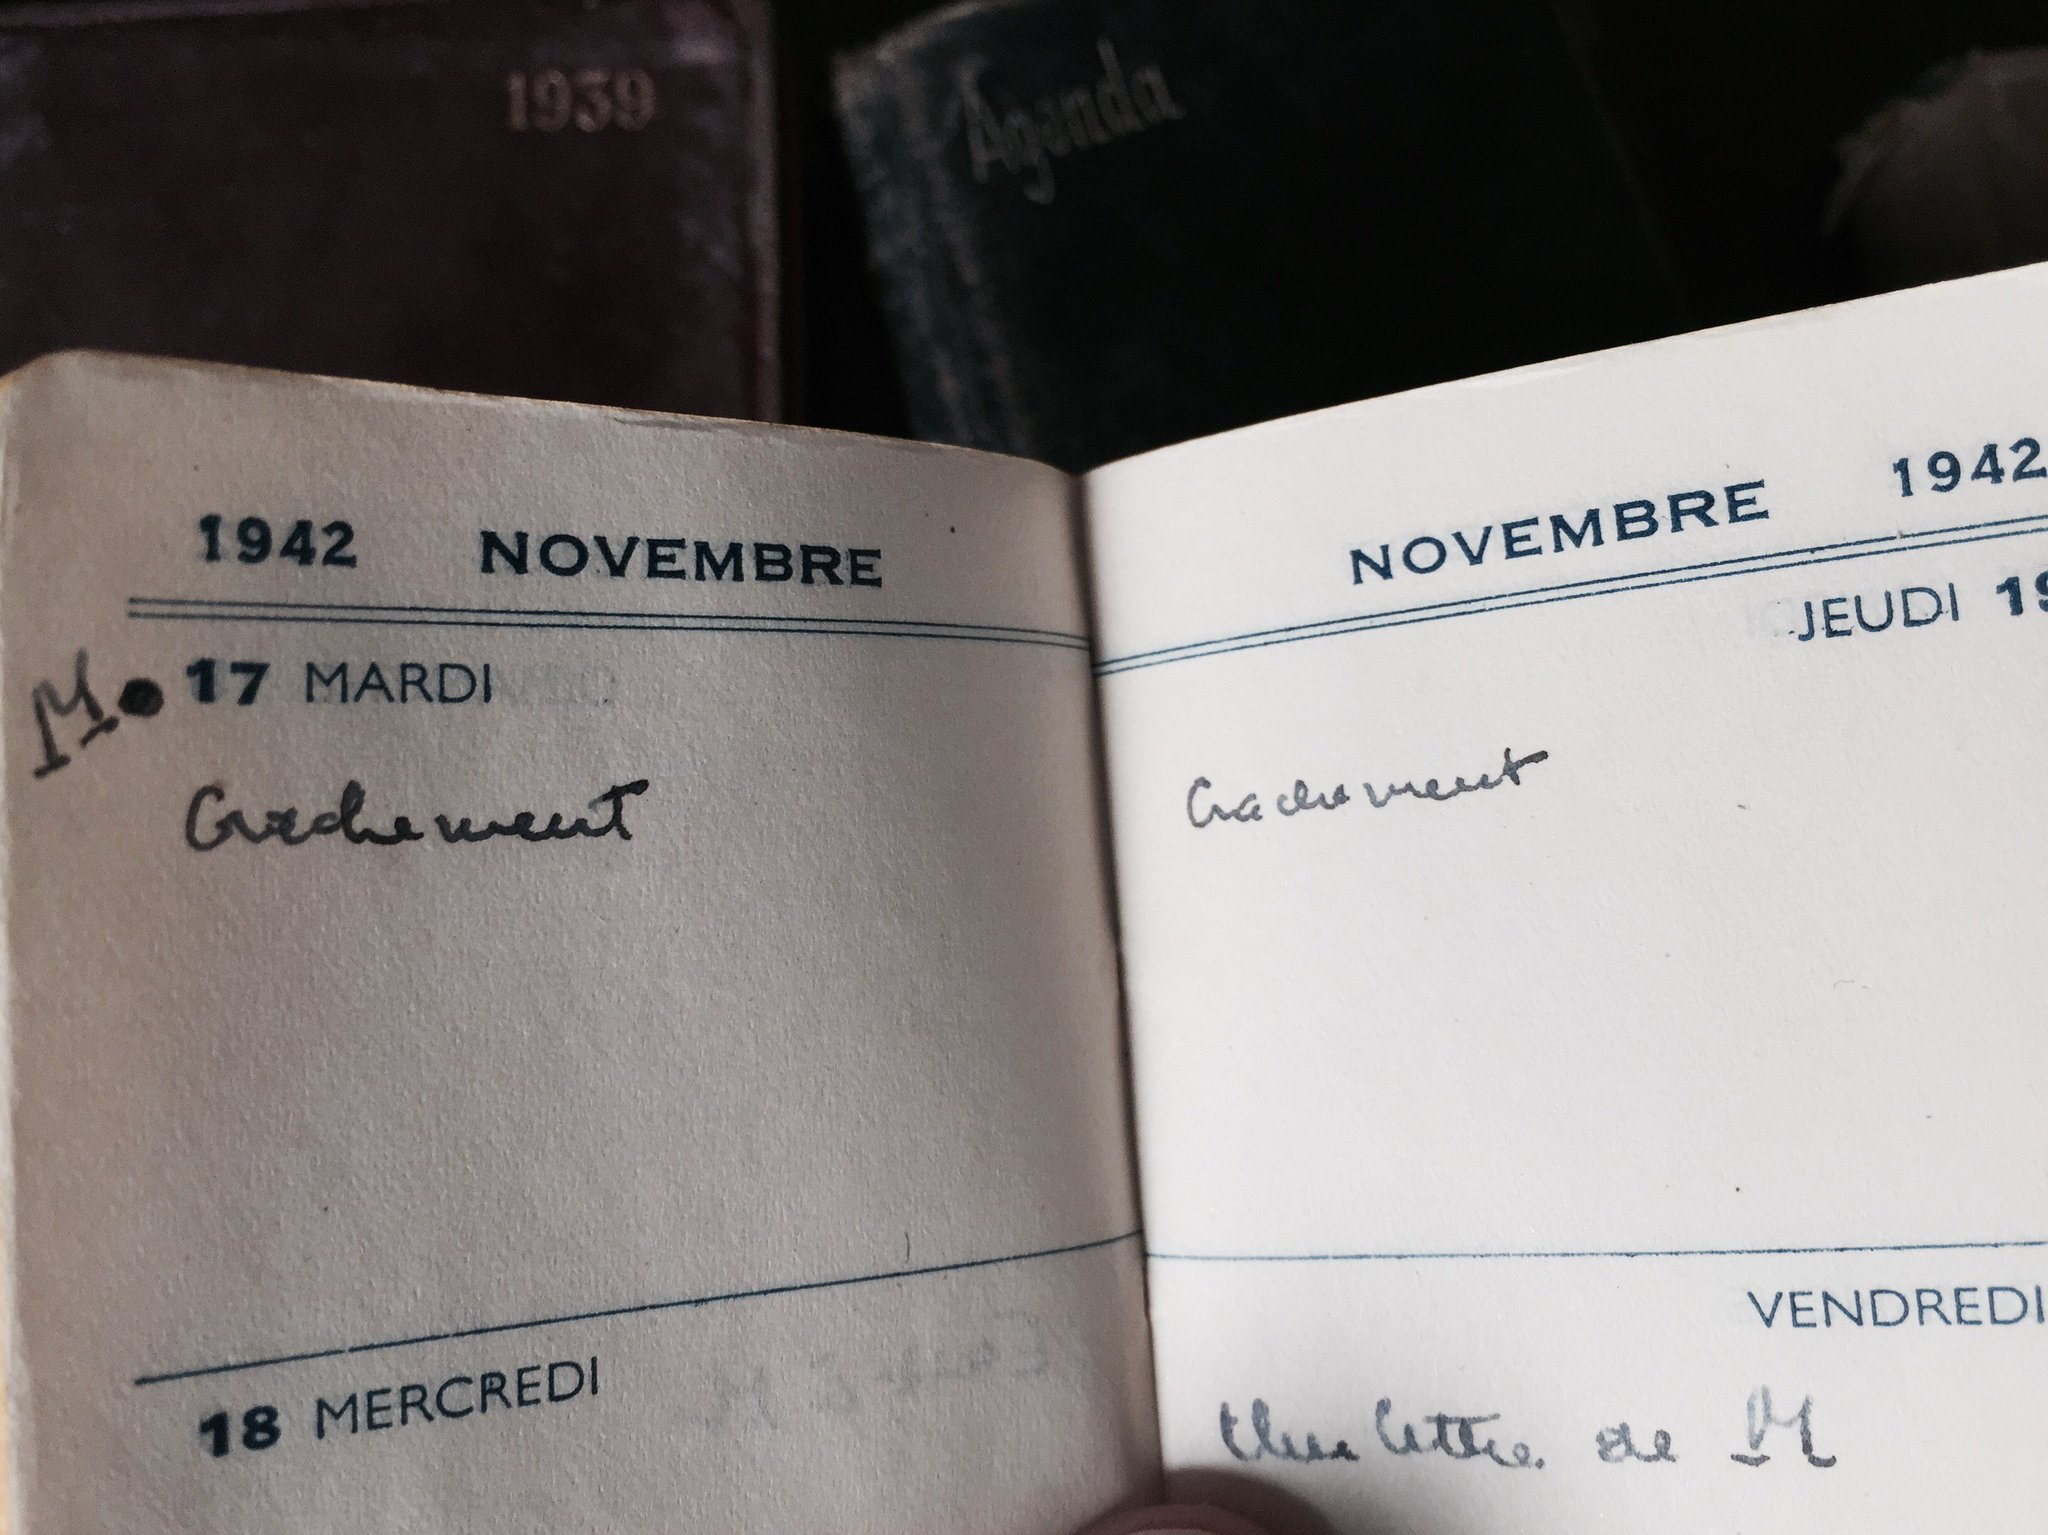 Novembre 42 : "crachement" "crachement" #Madeleineproject https://t.co/2vZhEEdhdH